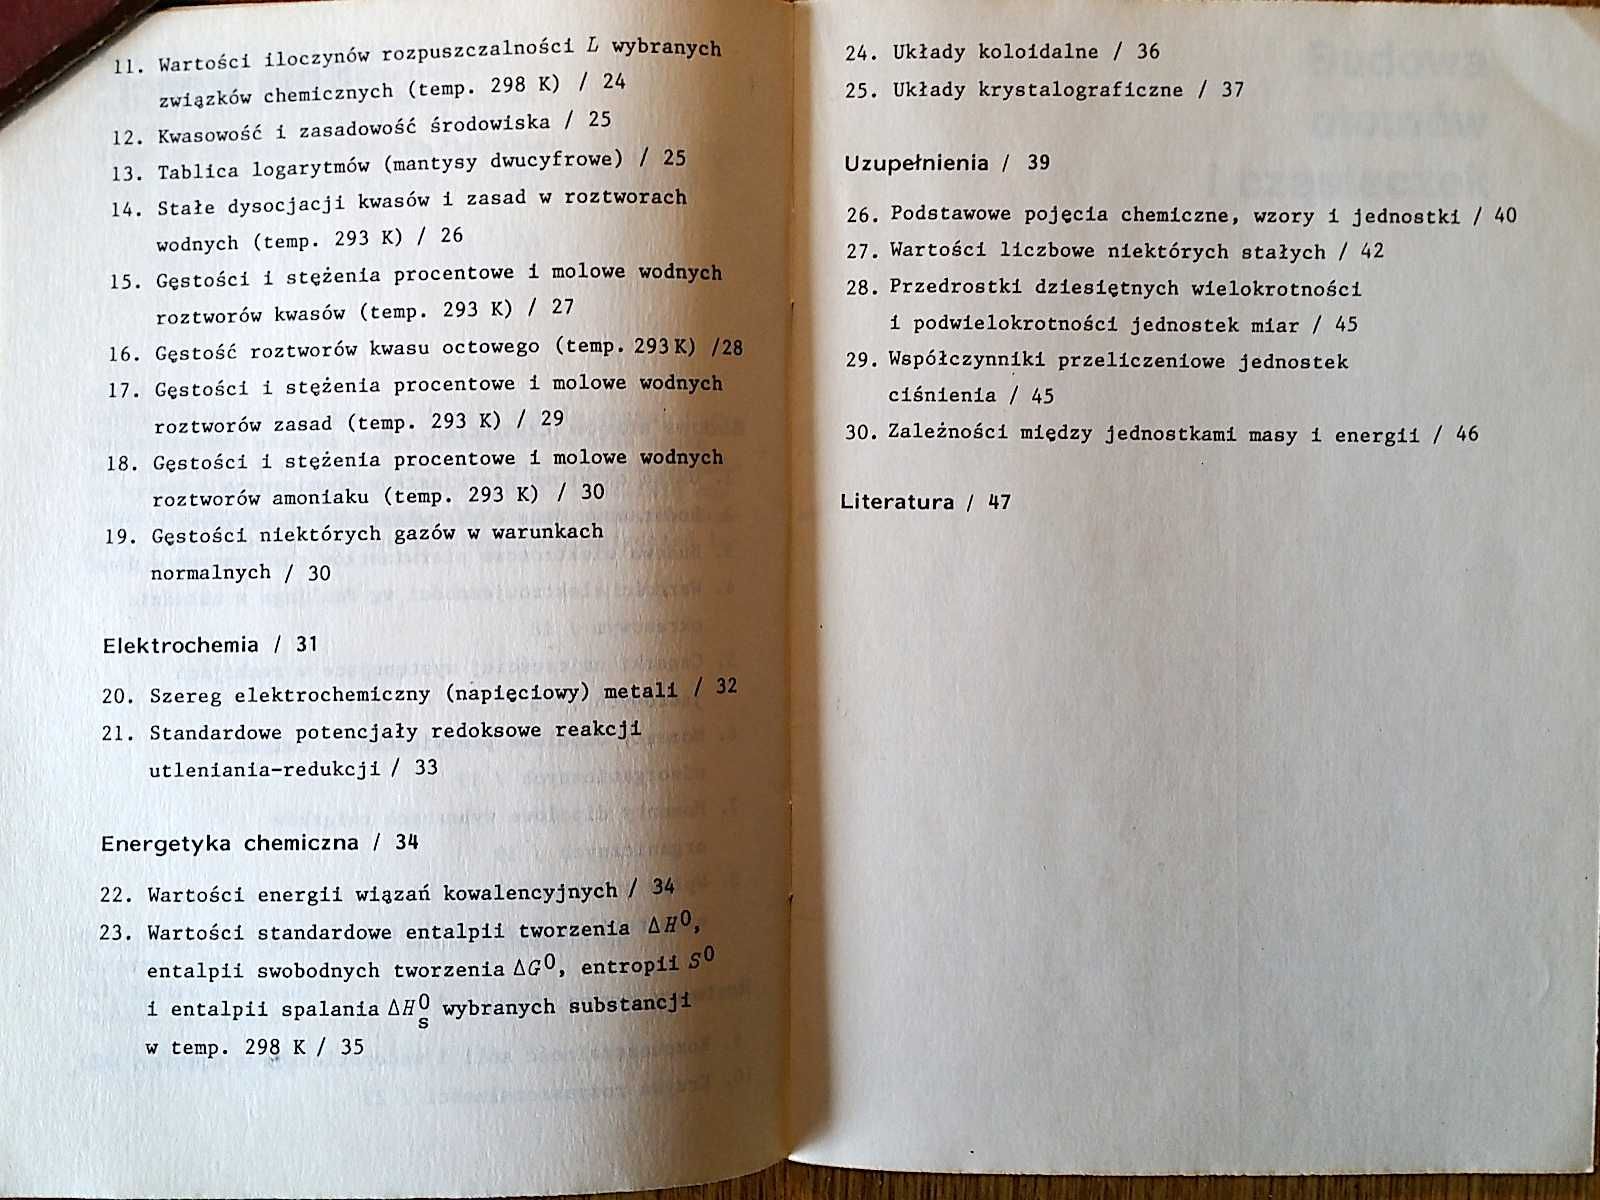 CHEMIA: "Tabele chemiczne dla uczniów" (tablice chemiczne) WNT 1988